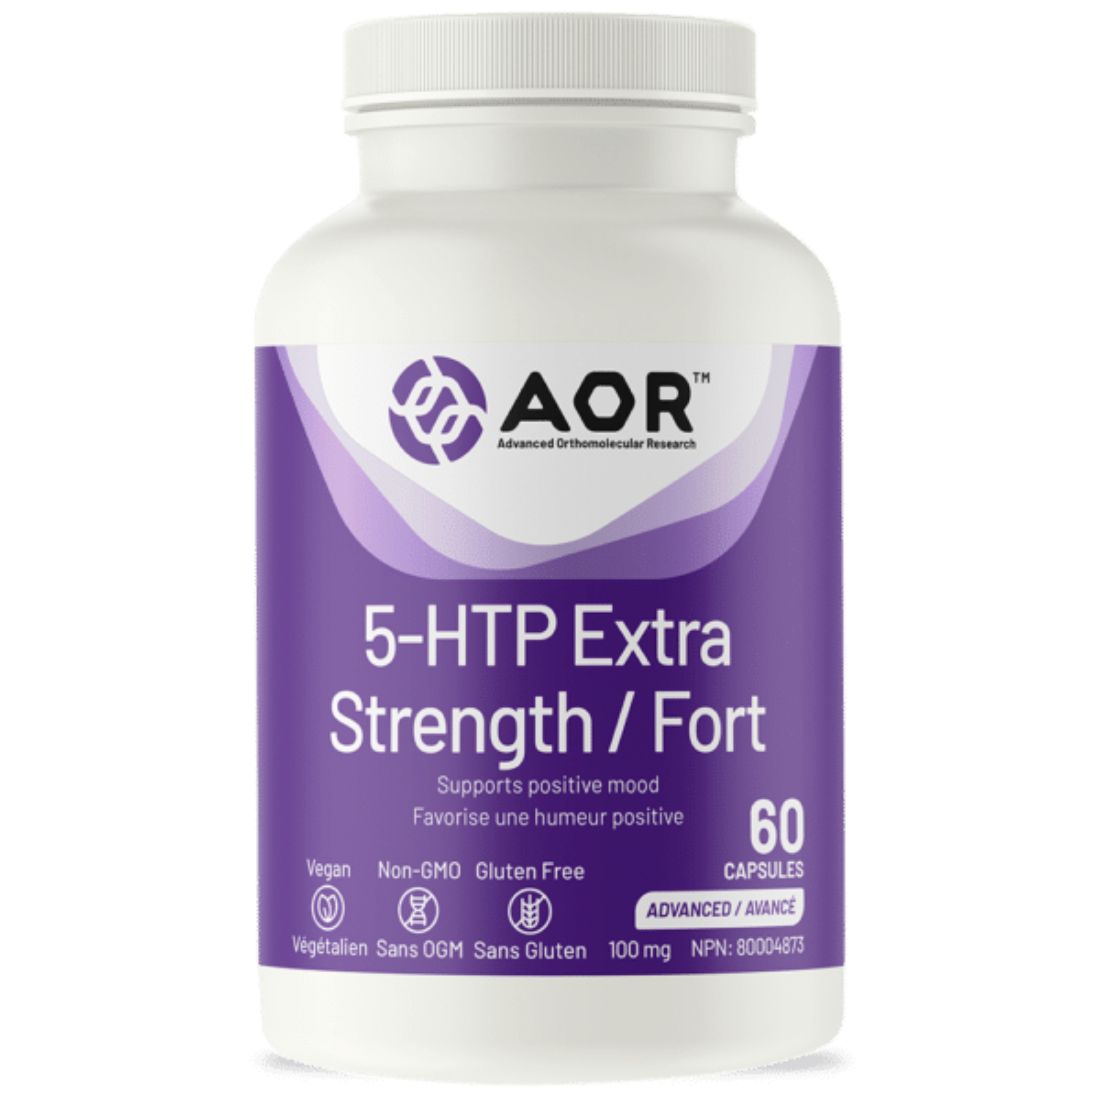 AOR 5-HTP Extra Strength 100mg